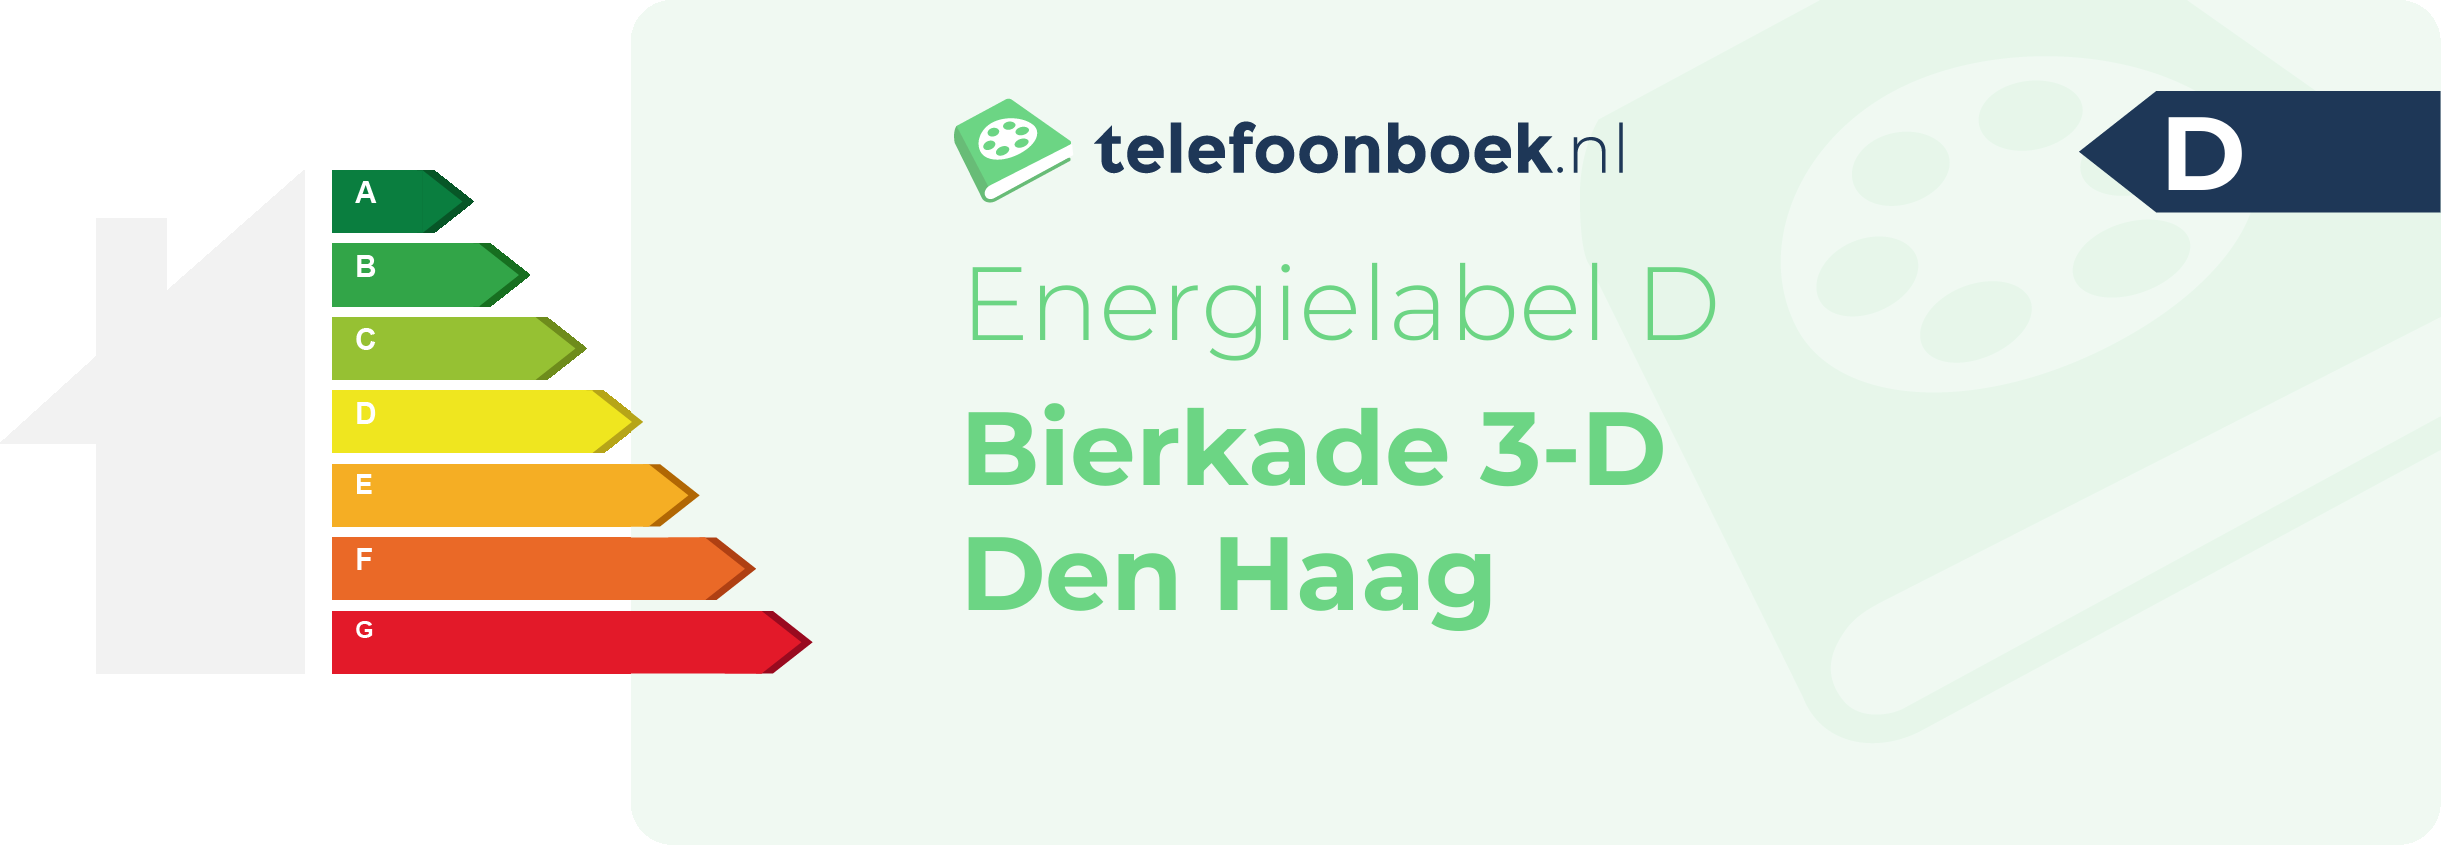 Energielabel Bierkade 3-D Den Haag